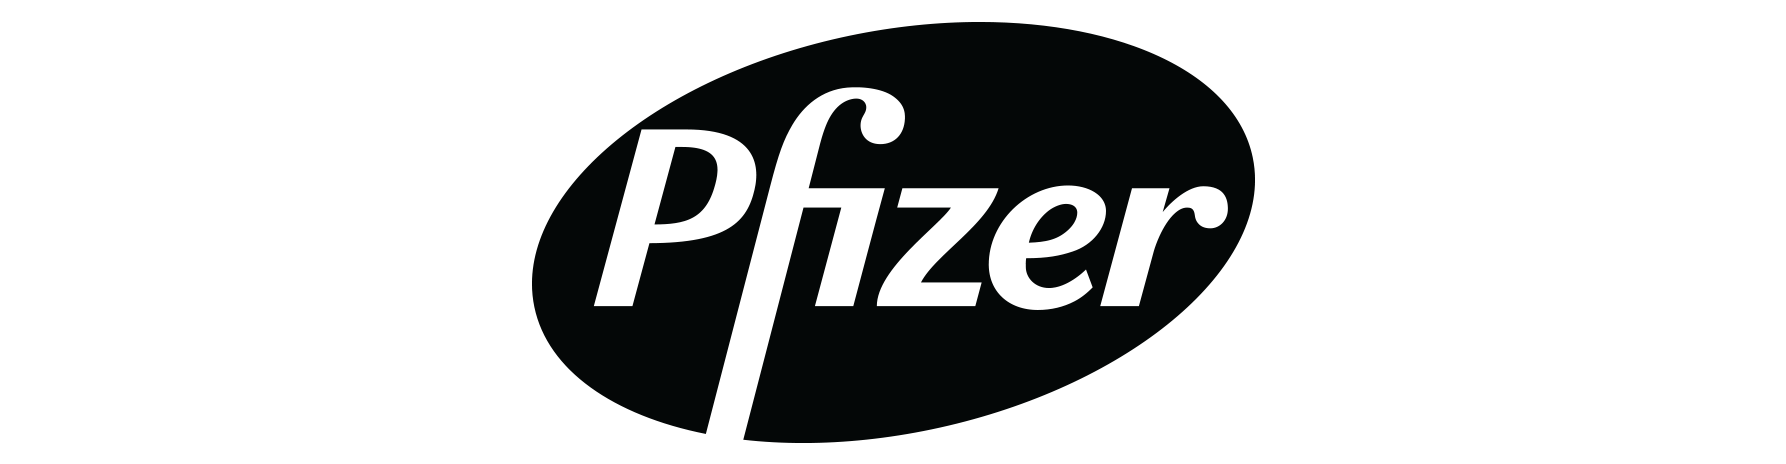 Industries_Health_Pfizer